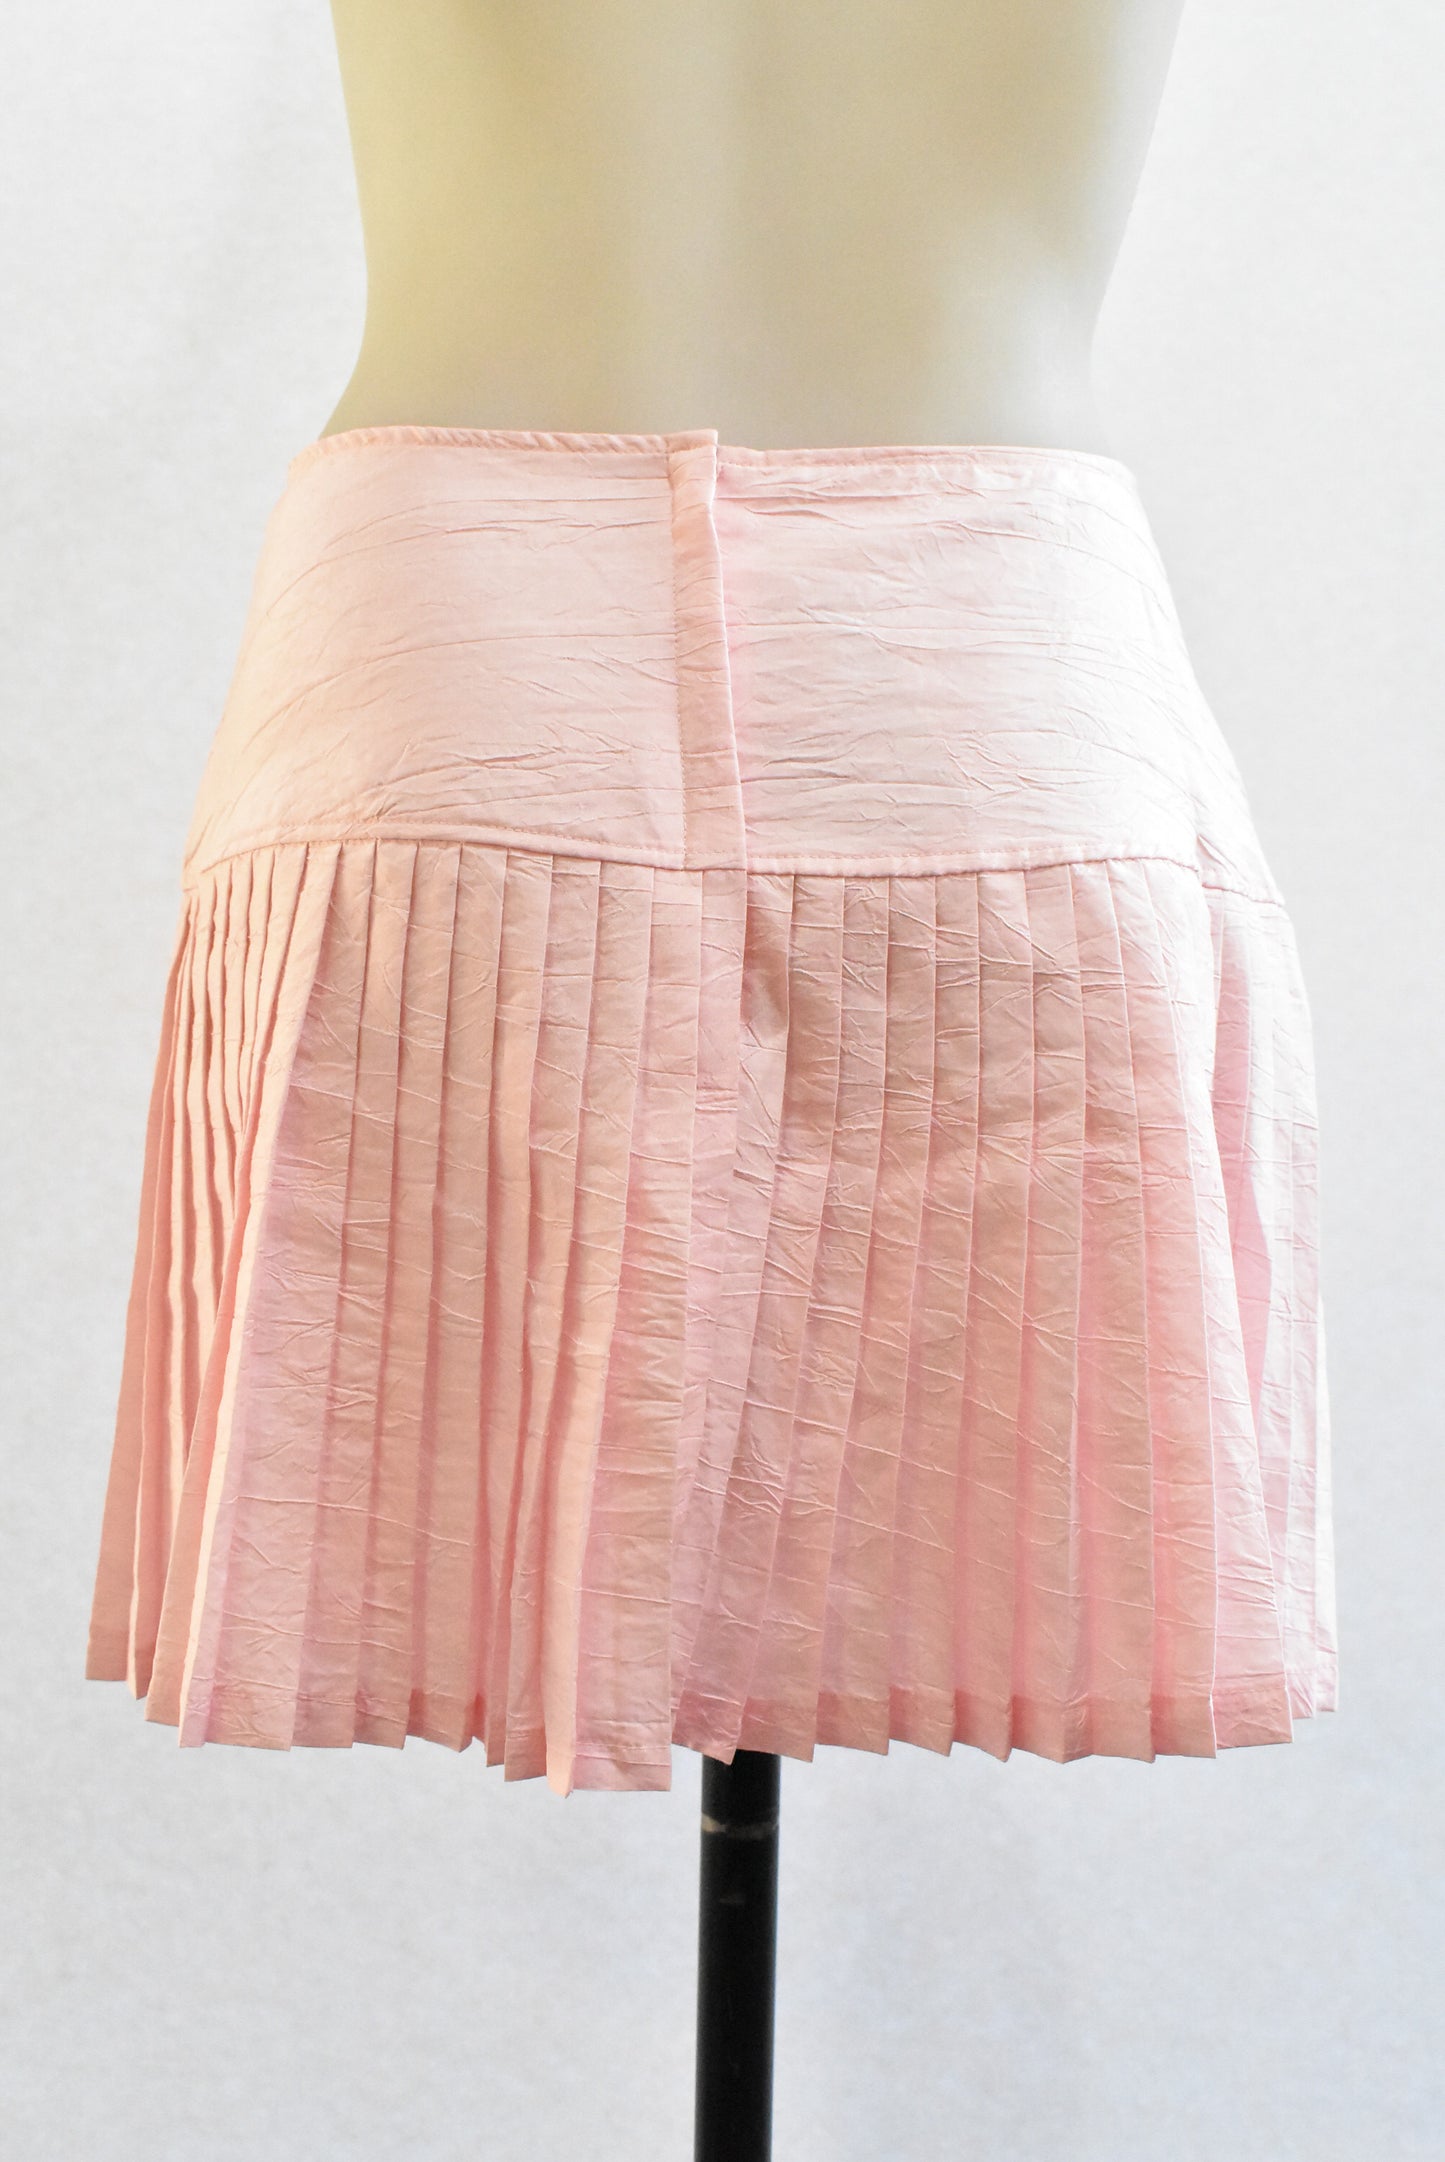 Cherade retro pink pleat mini, size 12